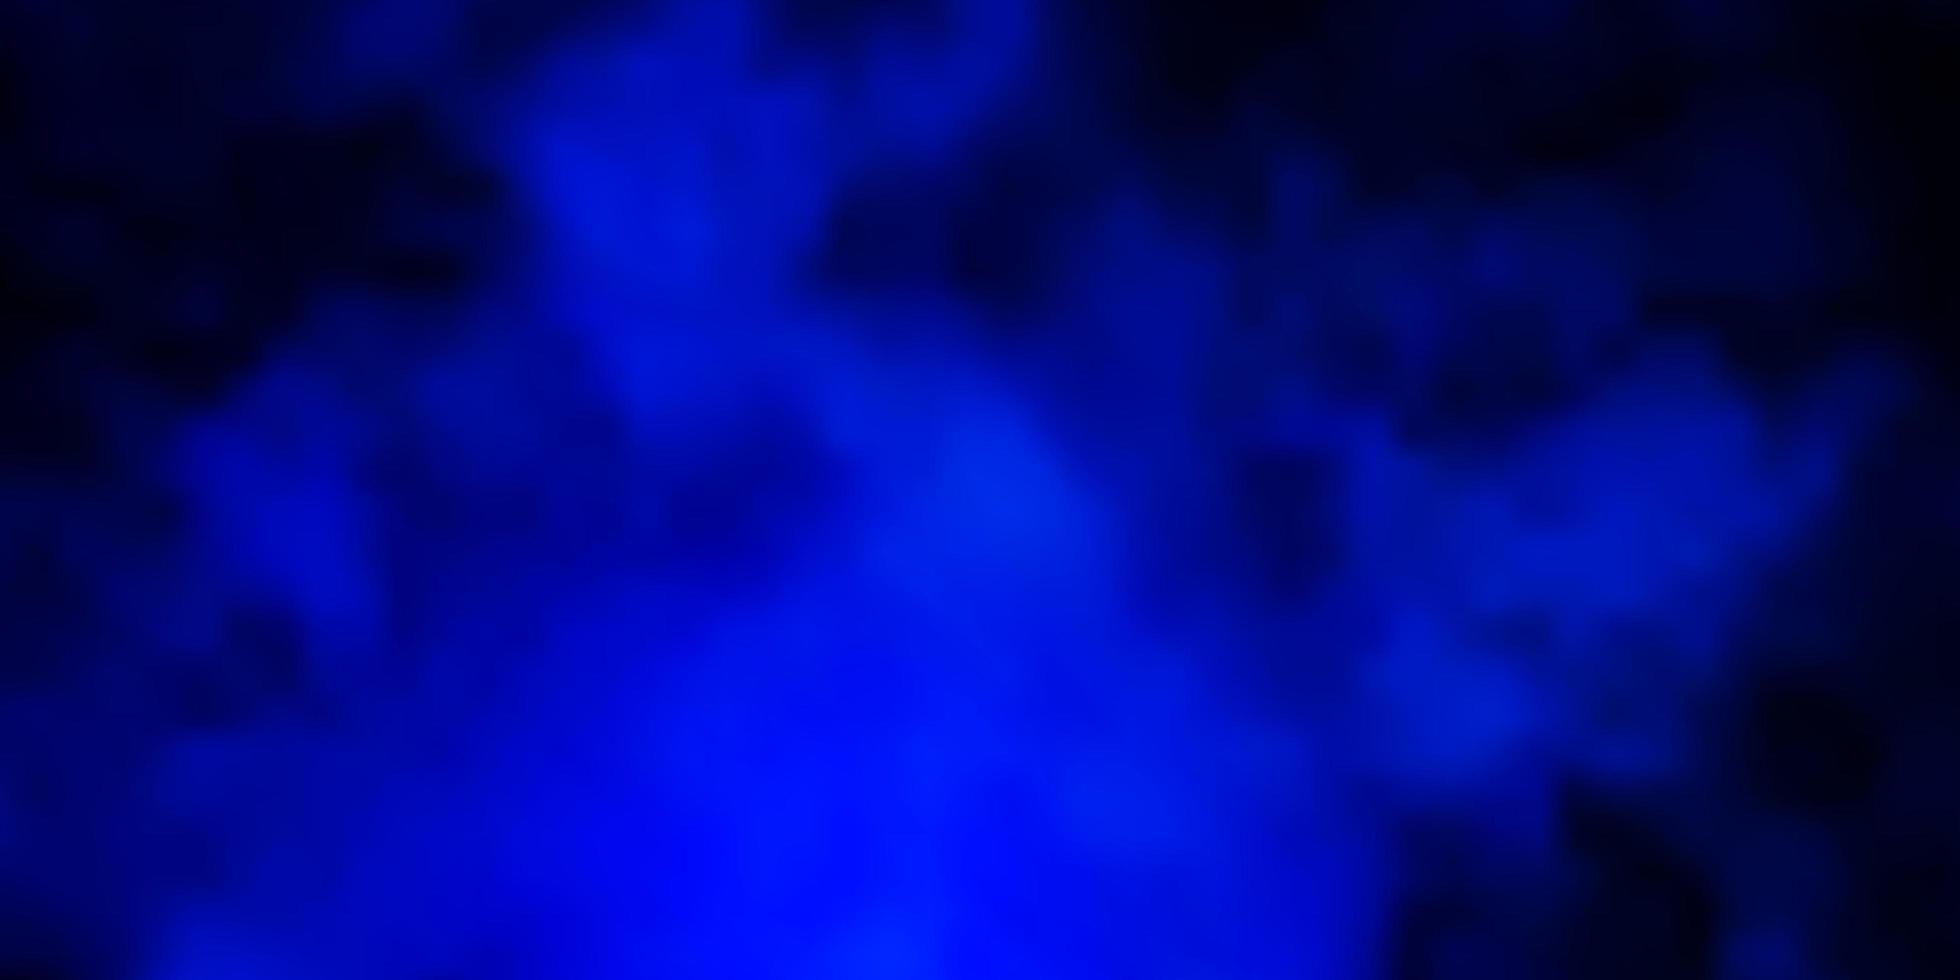 sfondo vettoriale blu scuro con cumulo.